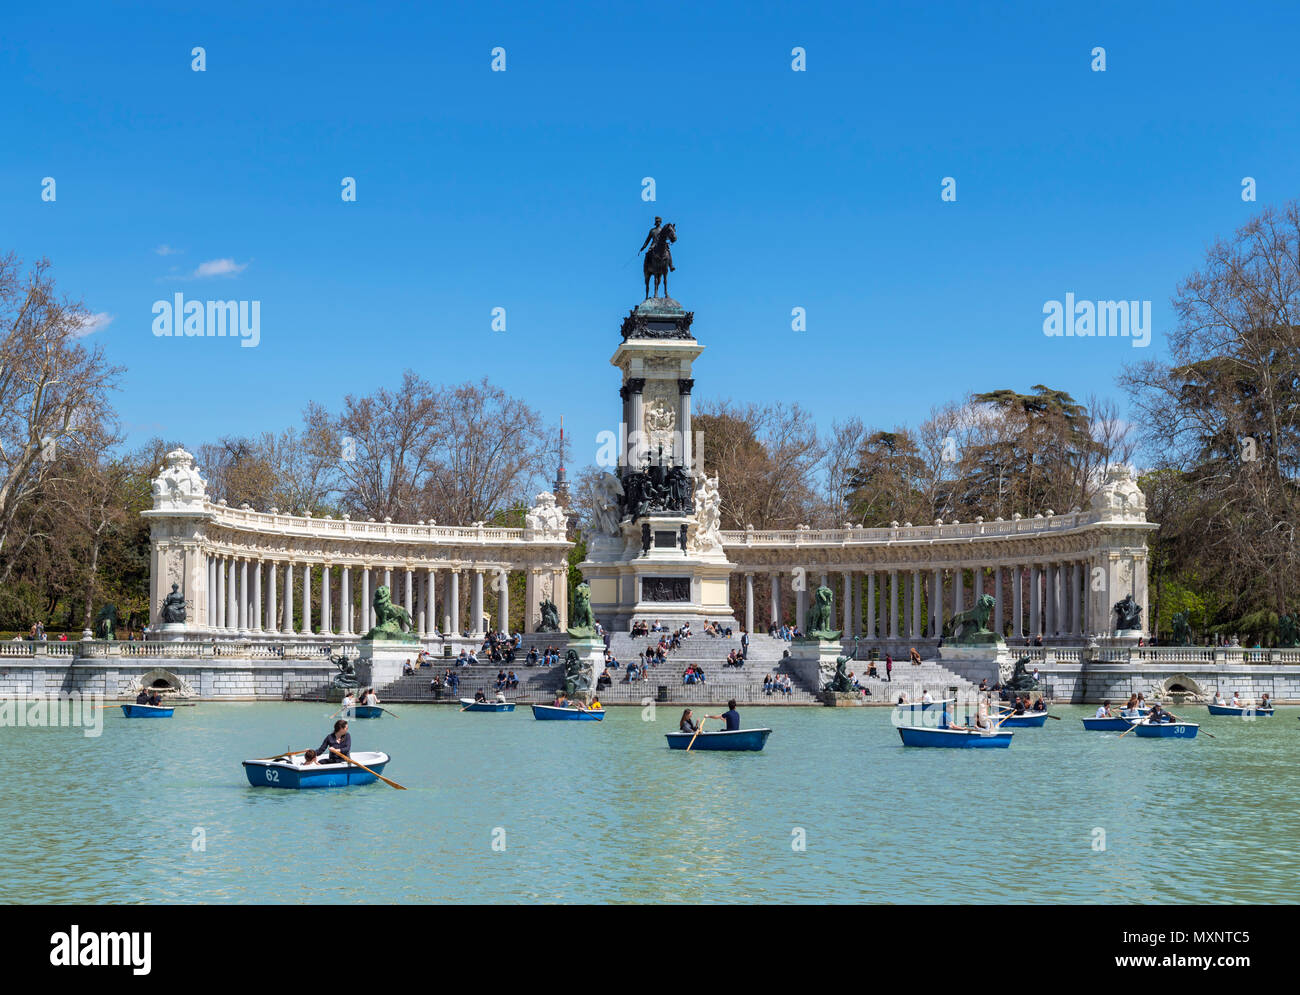 Madrid, parc du Retiro. Bateau sur l'Estanque Grande del Retiro avec l'Alfonso XII monument situé derrière, Parque del Buen Retiro, Madrid, Espagne. Banque D'Images